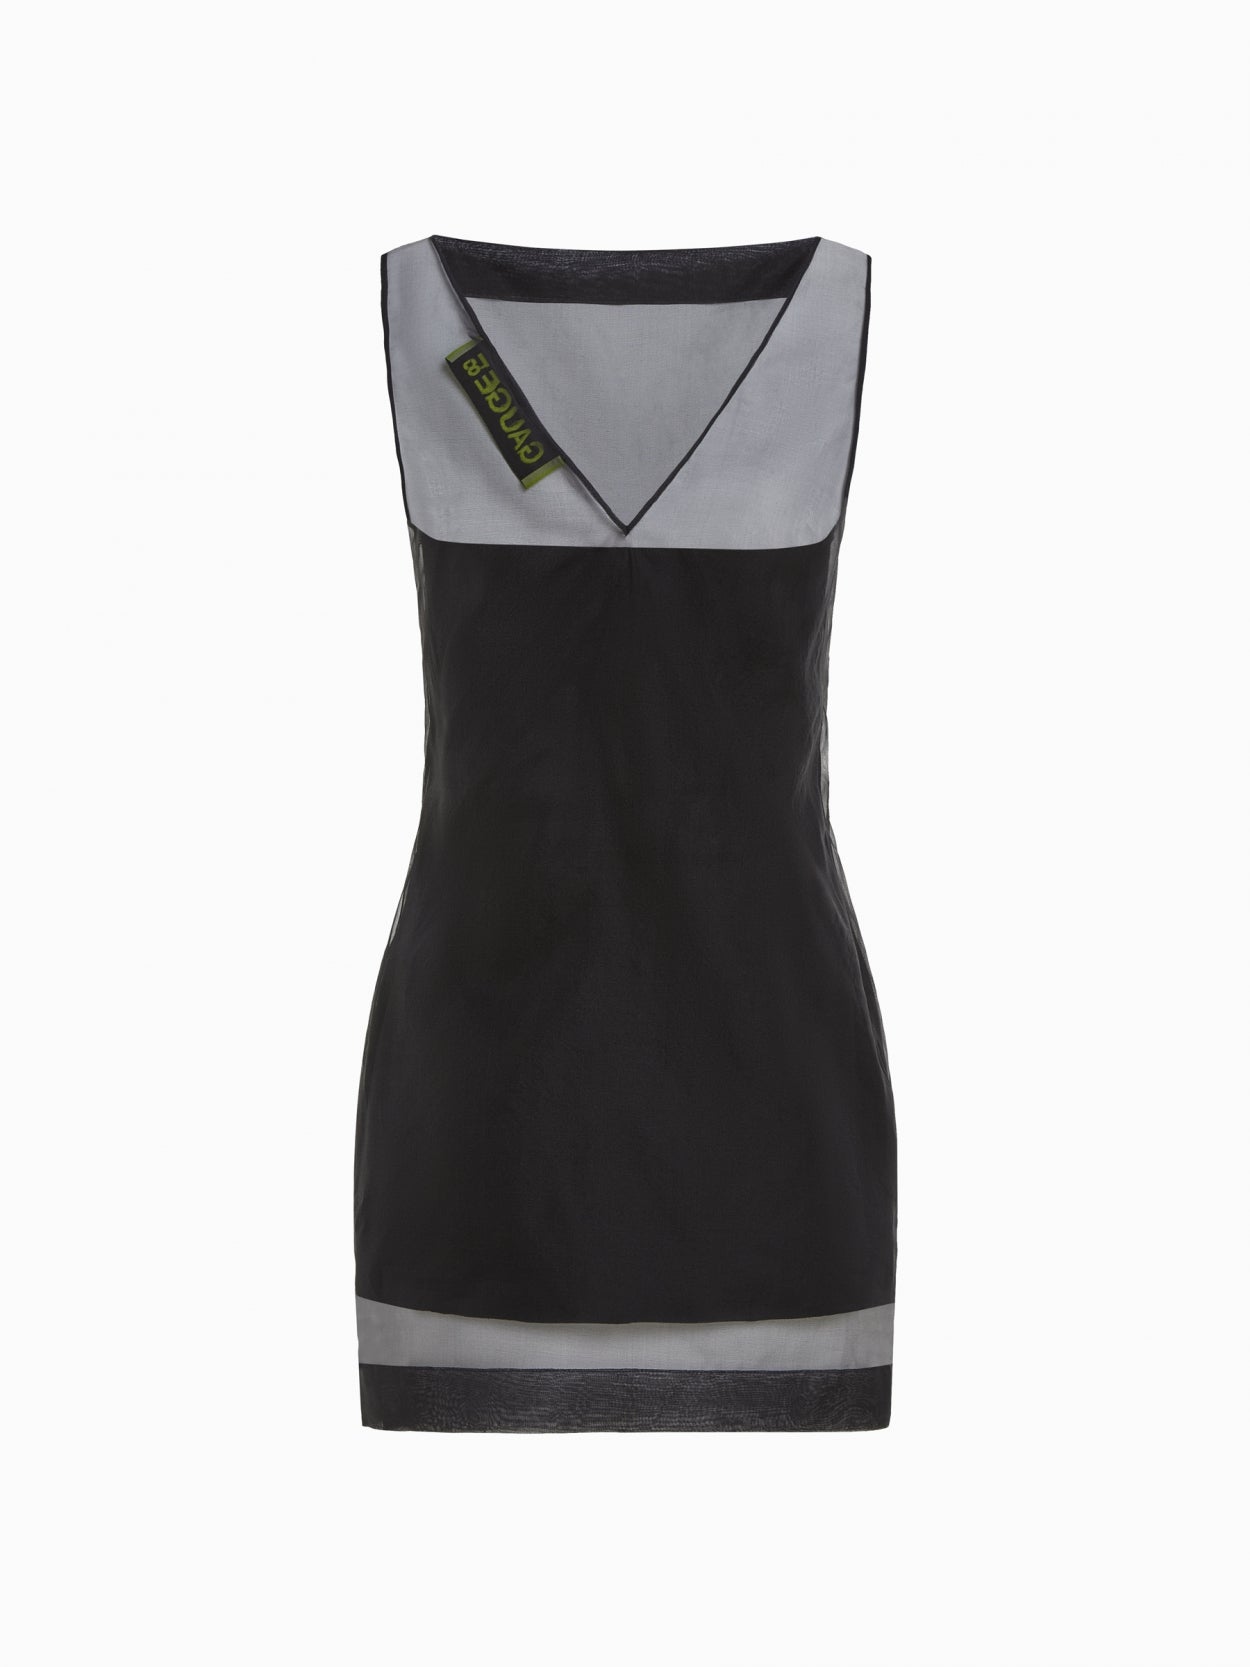 front packshot of a black mesh overlay dress